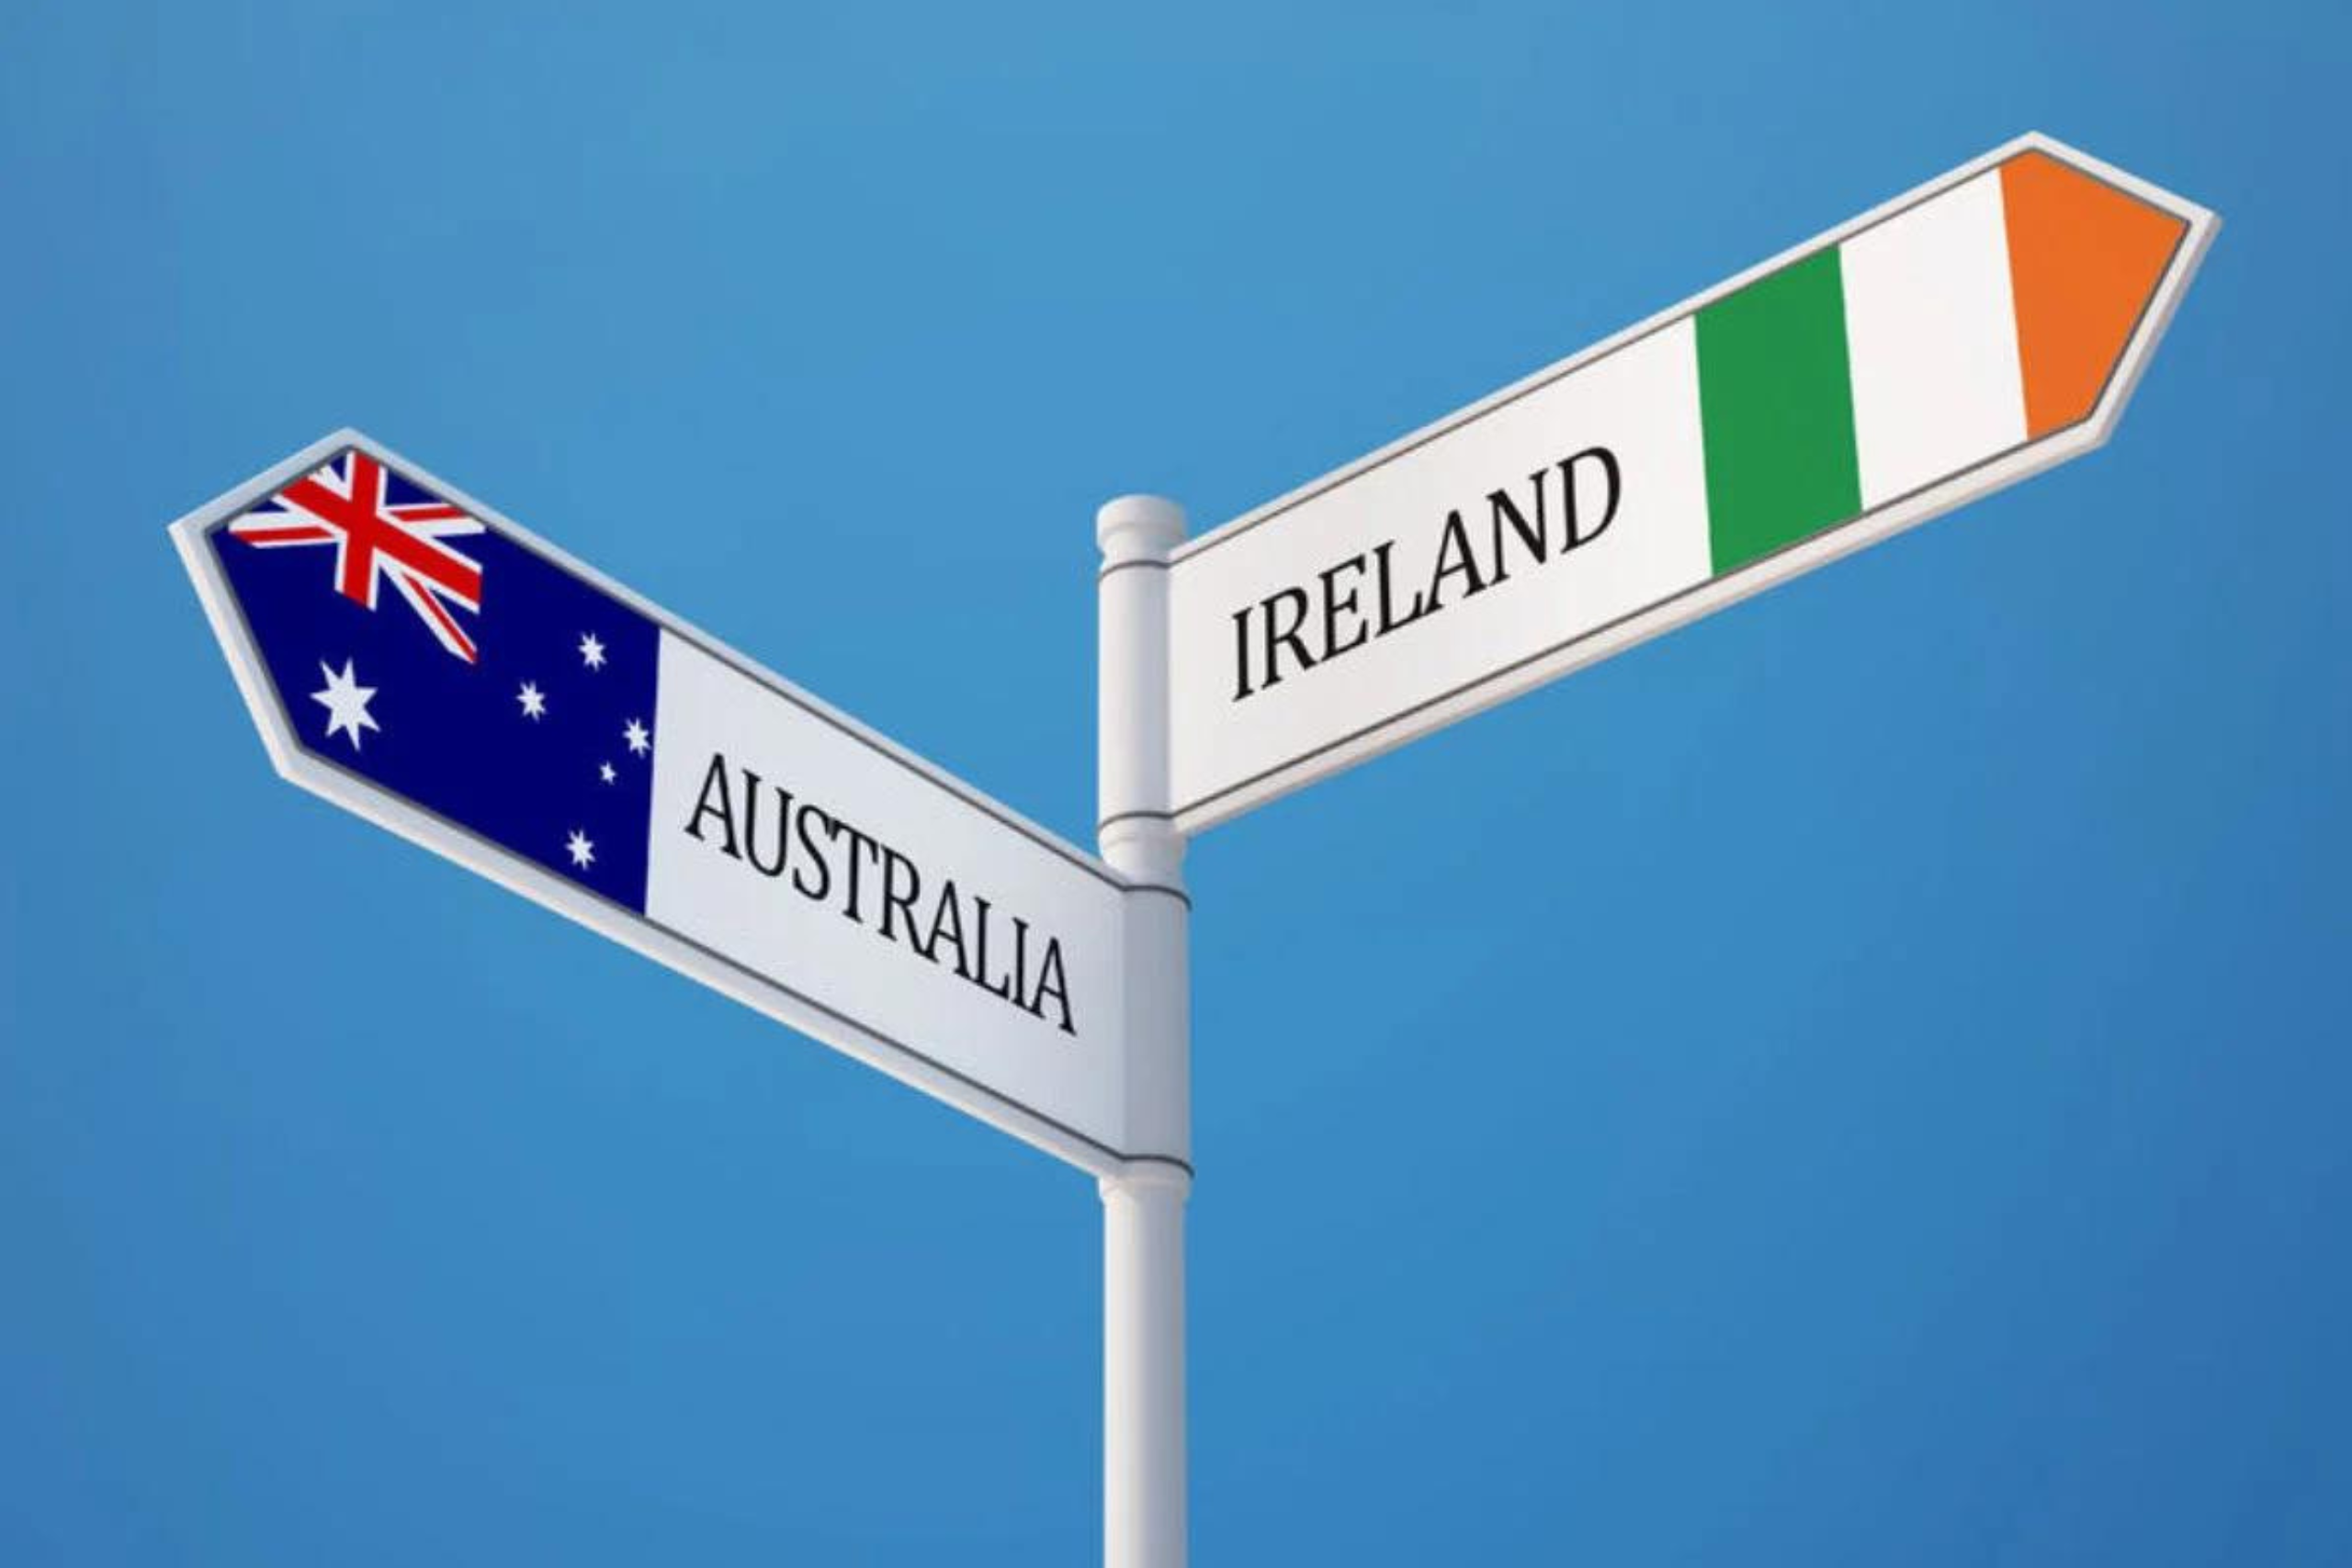 Placas simbolizando a Austrália e a Irlanda